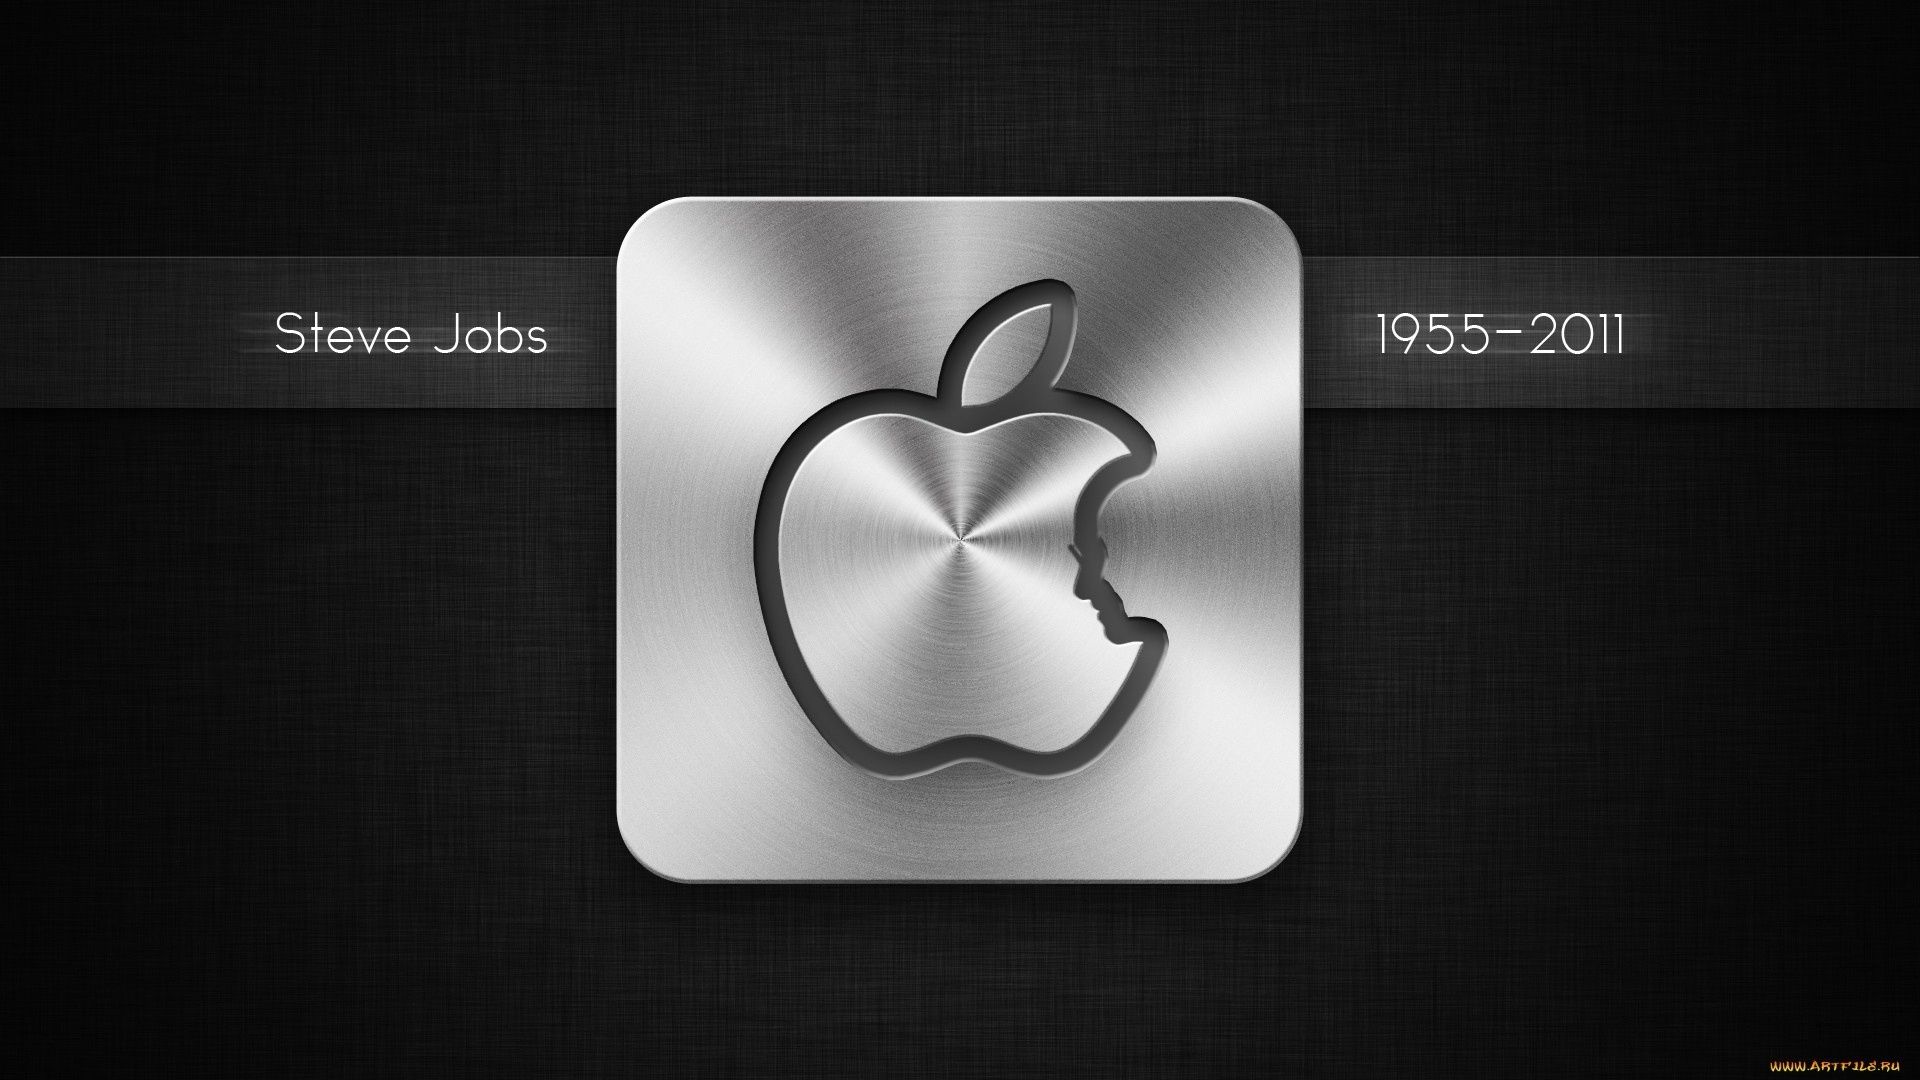 apple symbol image business internet technology desktop illustration